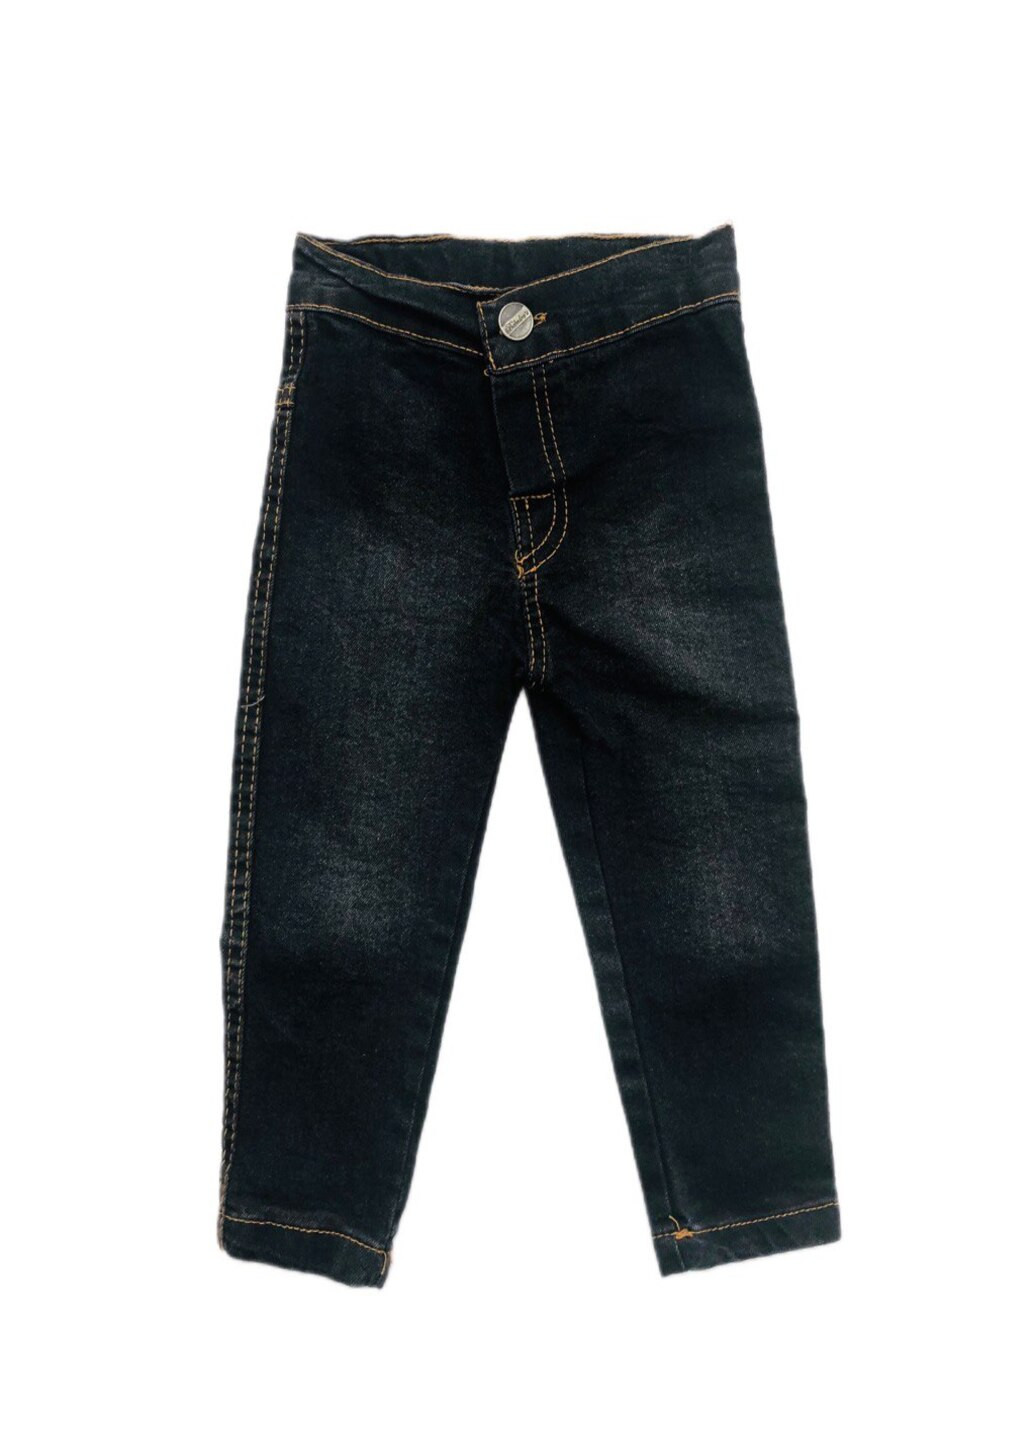 Черные джинсы для мальчика Модняшки